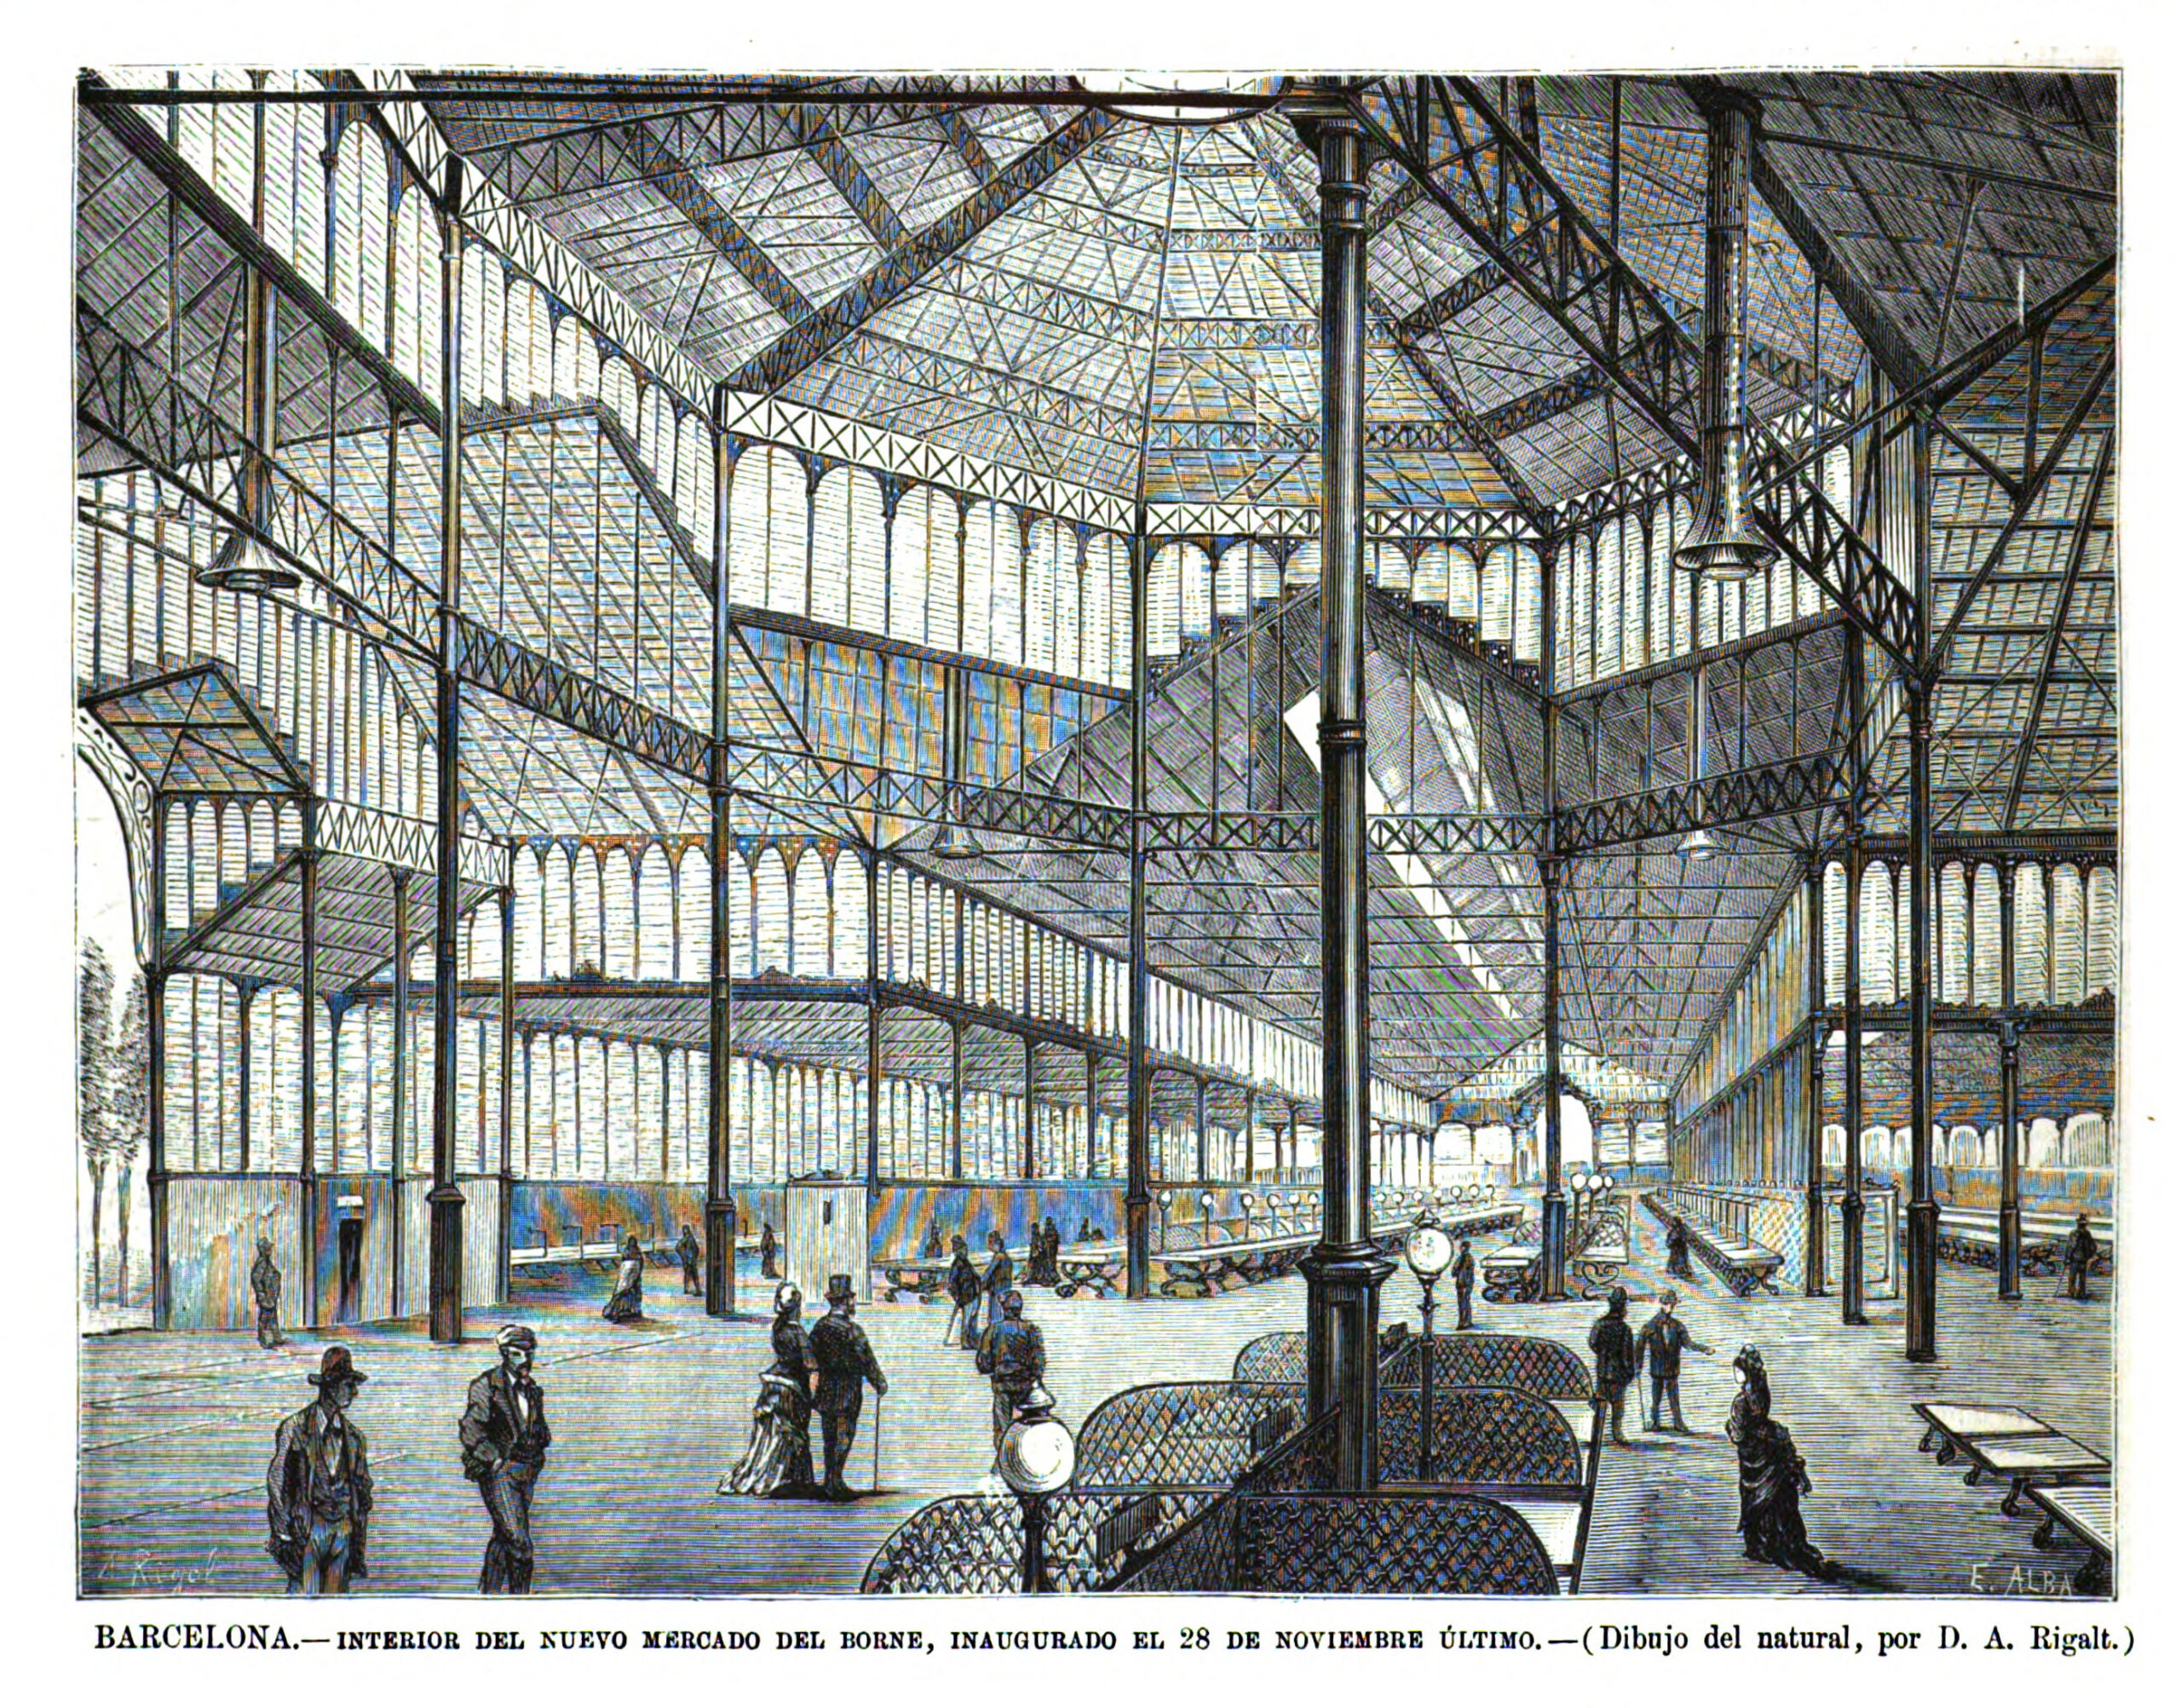 Barcelona.—Interior del nuevo mercado del Borne, inaugurado el 28 de noviembre último.—(Dibujo del natural, por D. A. Rigalt.) 22 de desembre del 1876